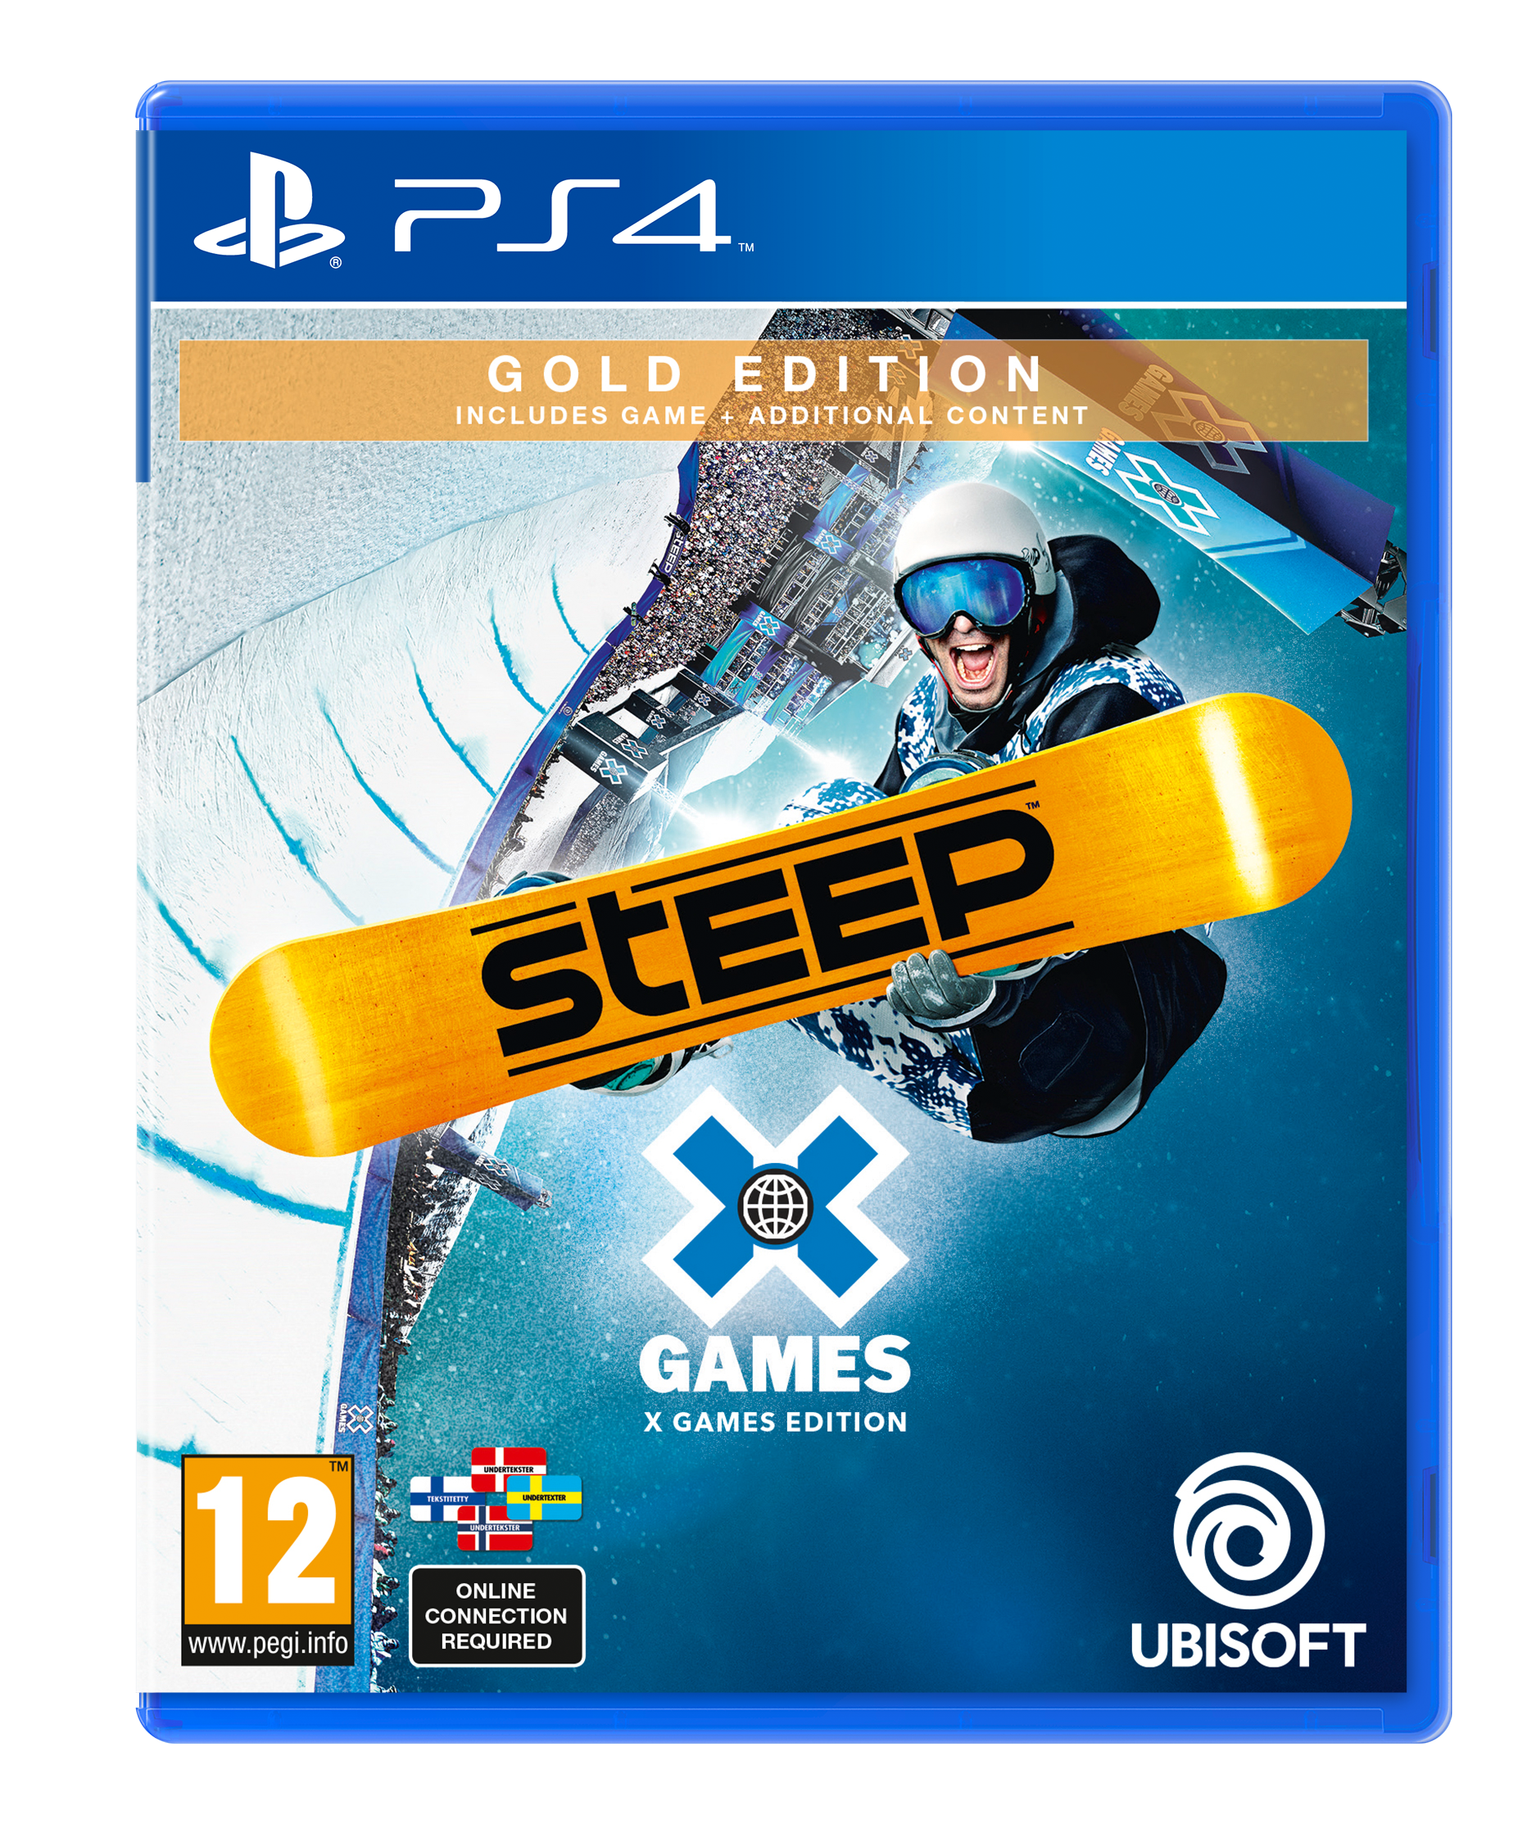 Køb Steep X Games Edition) - PlayStation 4 - Engelsk - Edition - Fri fragt